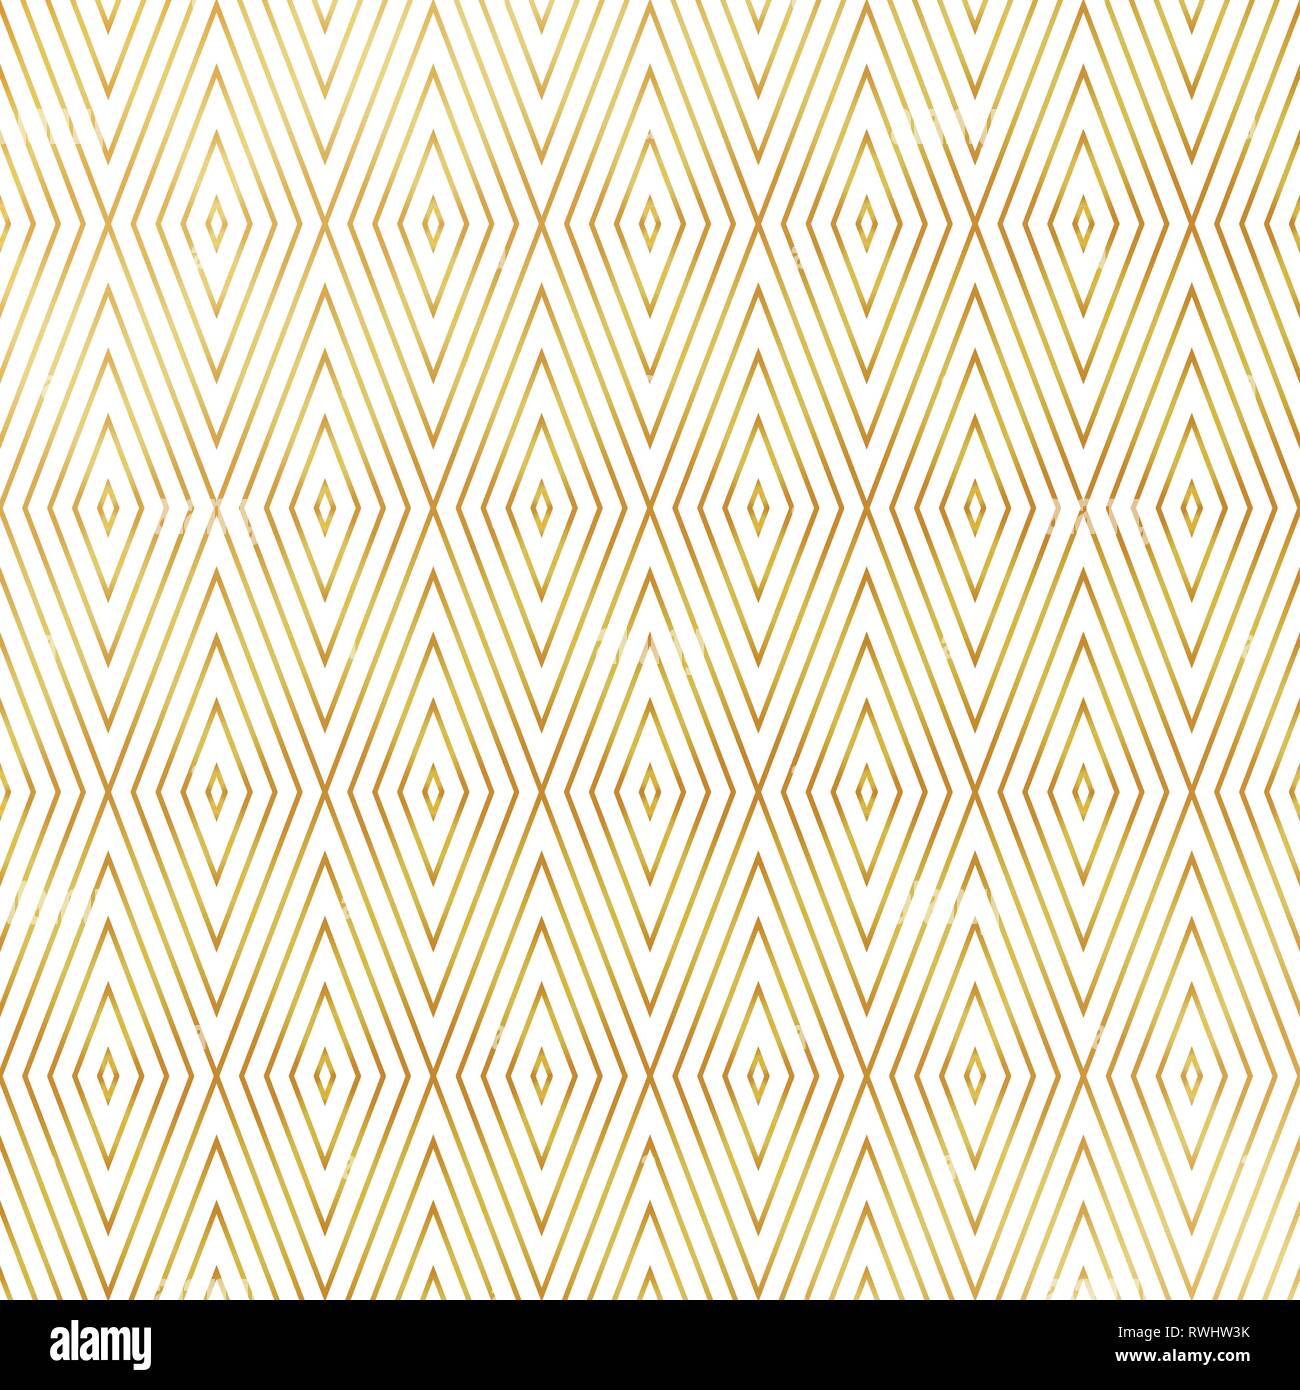 Abstrakte Luxus Platz Dreiecke Form golden style Muster Hintergrund. Sie für Art déco-Design artwork verwenden können. Abbildung: Vector EPS 10. Stock Vektor